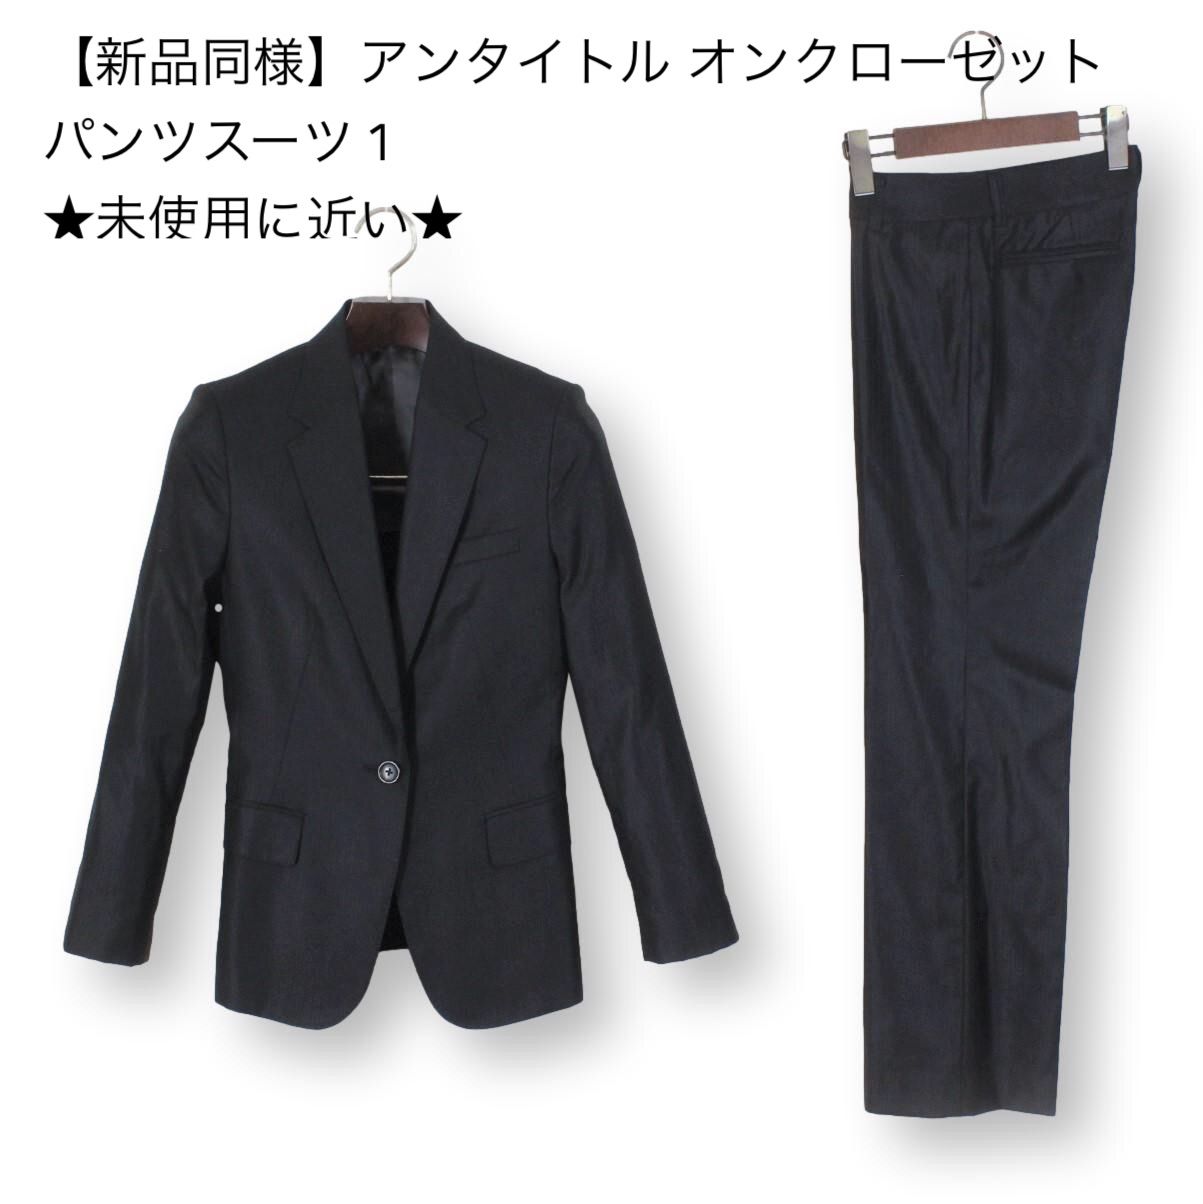 25【新品同様】アンタイトル オンクローゼット パンツスーツ 1